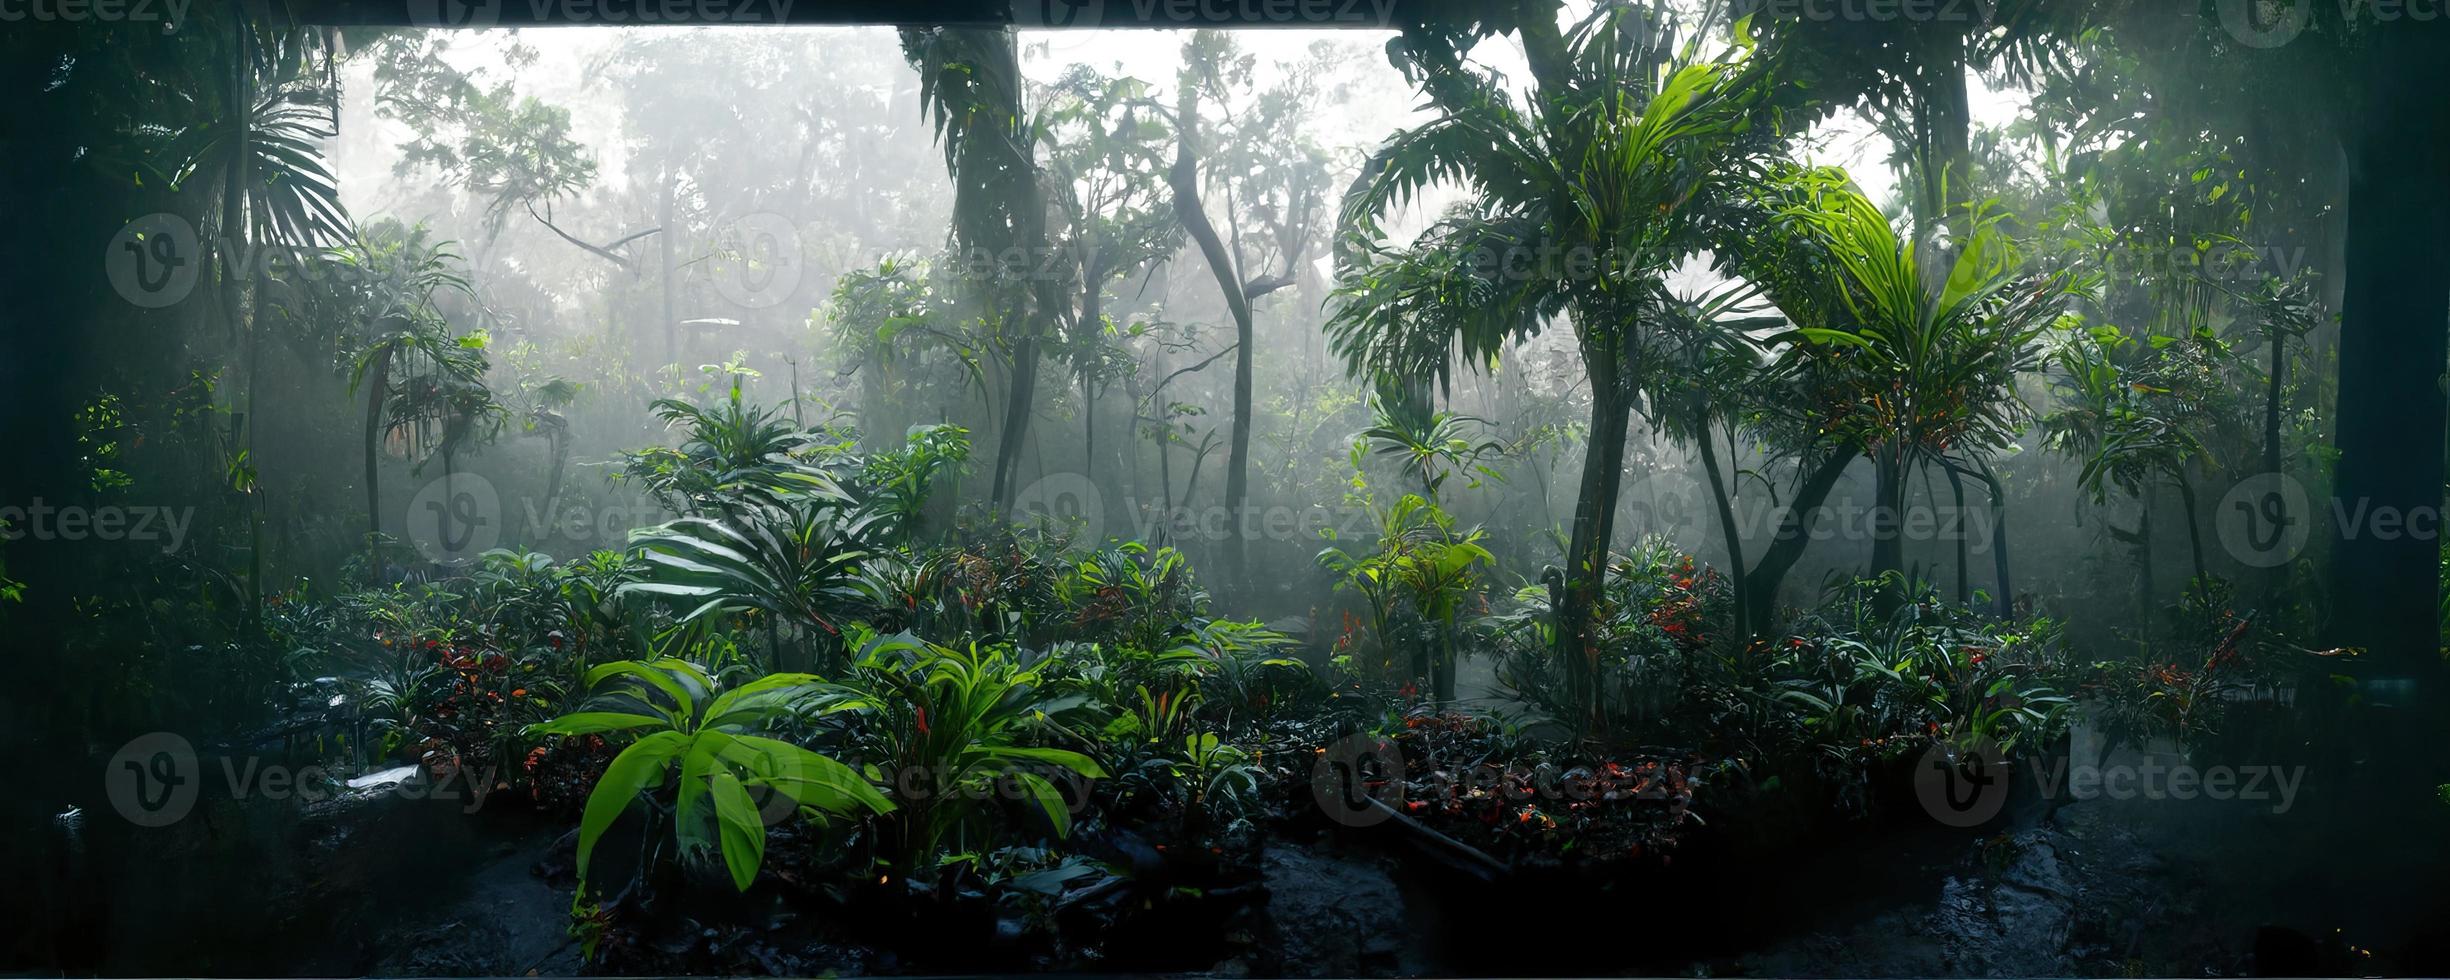 brumeux foncé exotique tropical jungle illustration conception photo